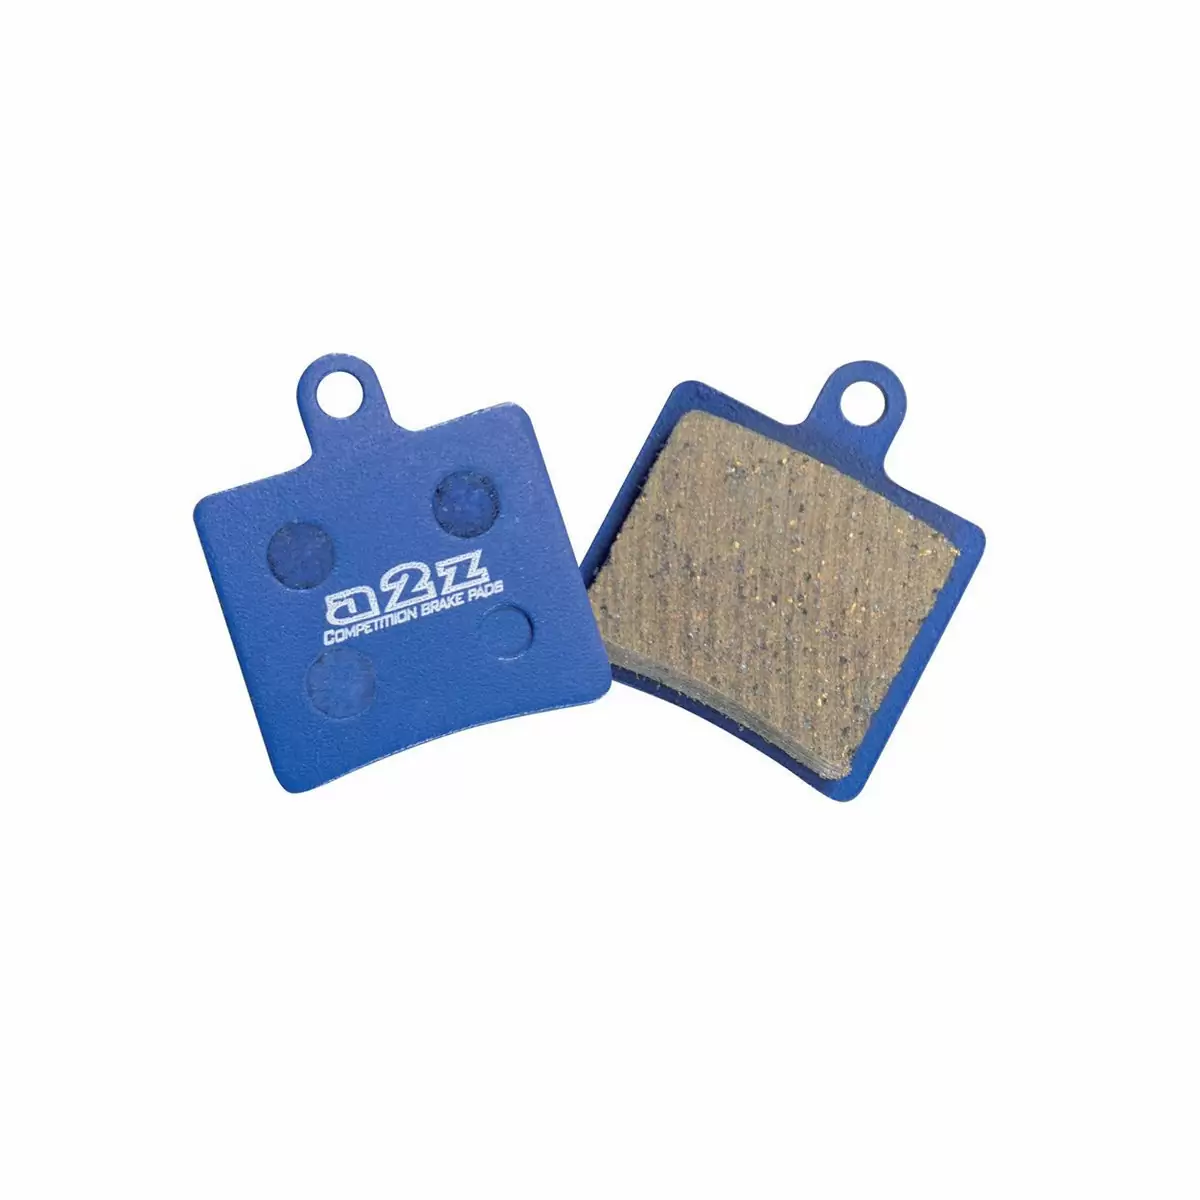 Pair of organic pads for Hope mini brakes - image